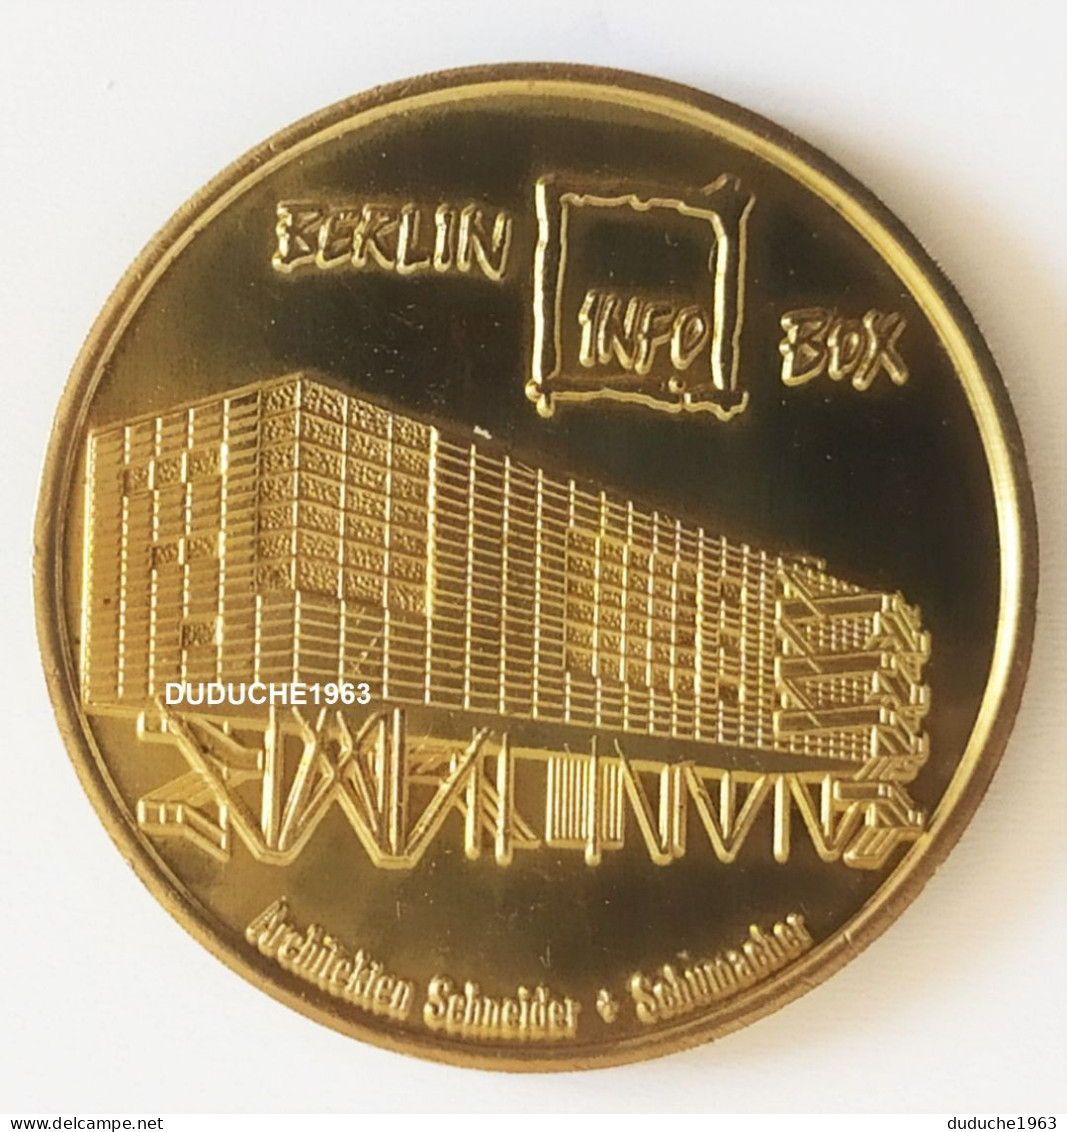 Monnaie De Paris. Allemagne - Berlin - Globe Taler Infobox Fernsehturm 1997/1998 - Non-datés